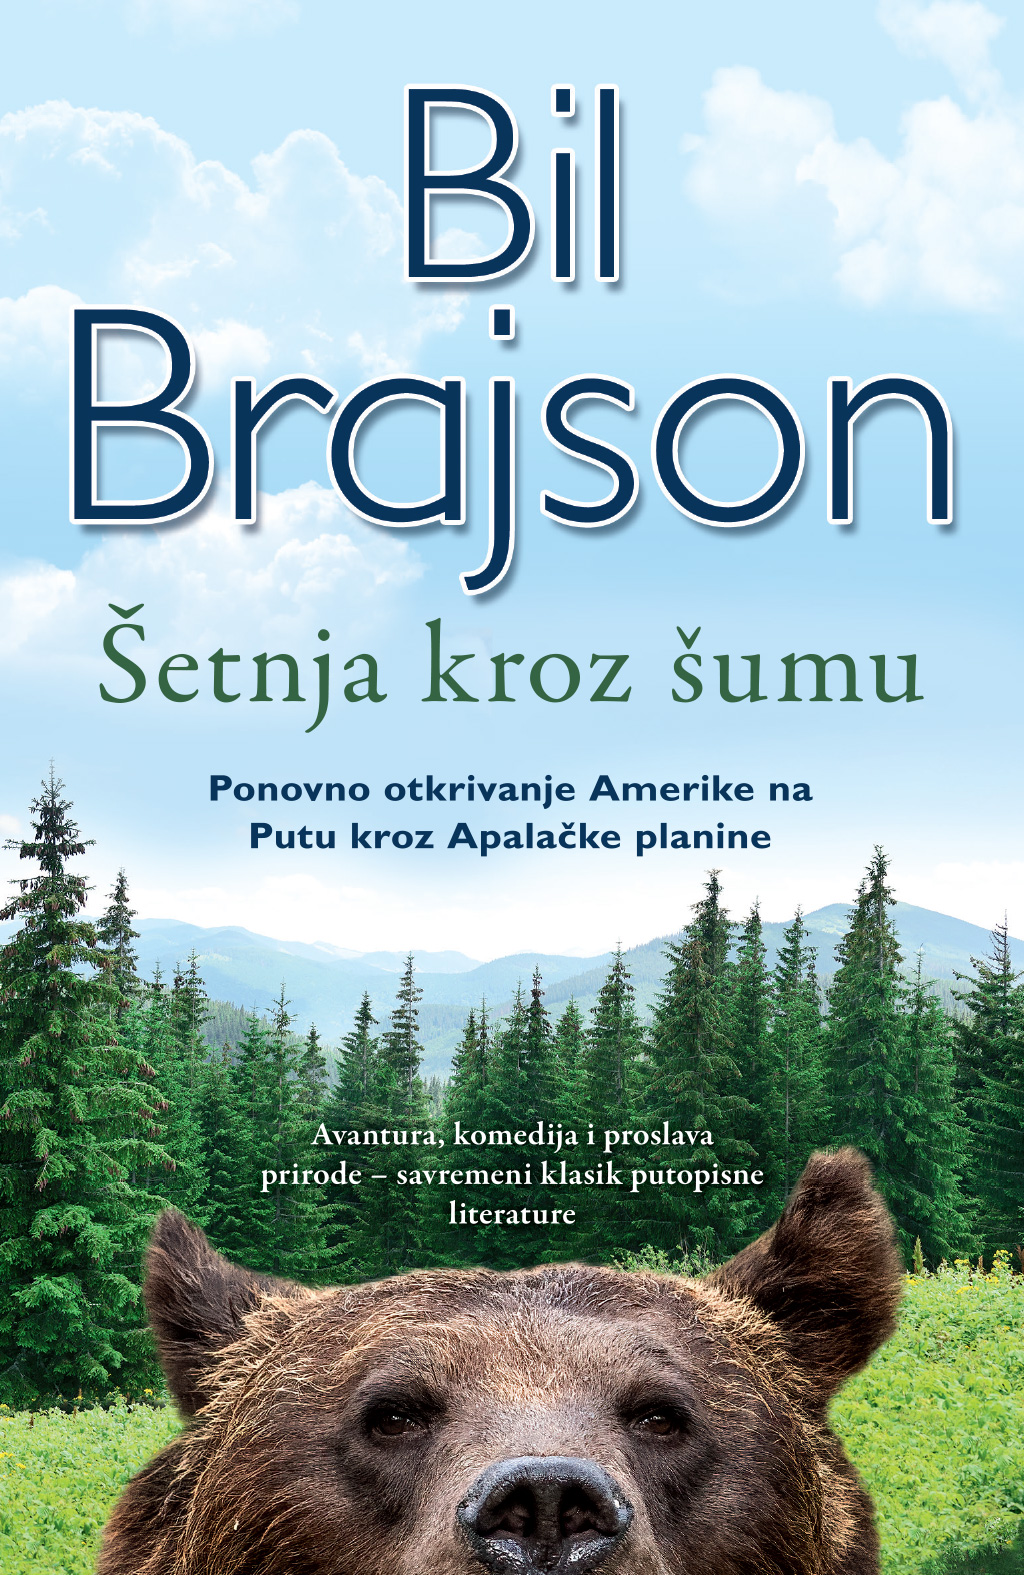 Krenite na još jedno uzbudljivo putovanje sa Bilom Brajsonom – „Šetnja kroz šumu“